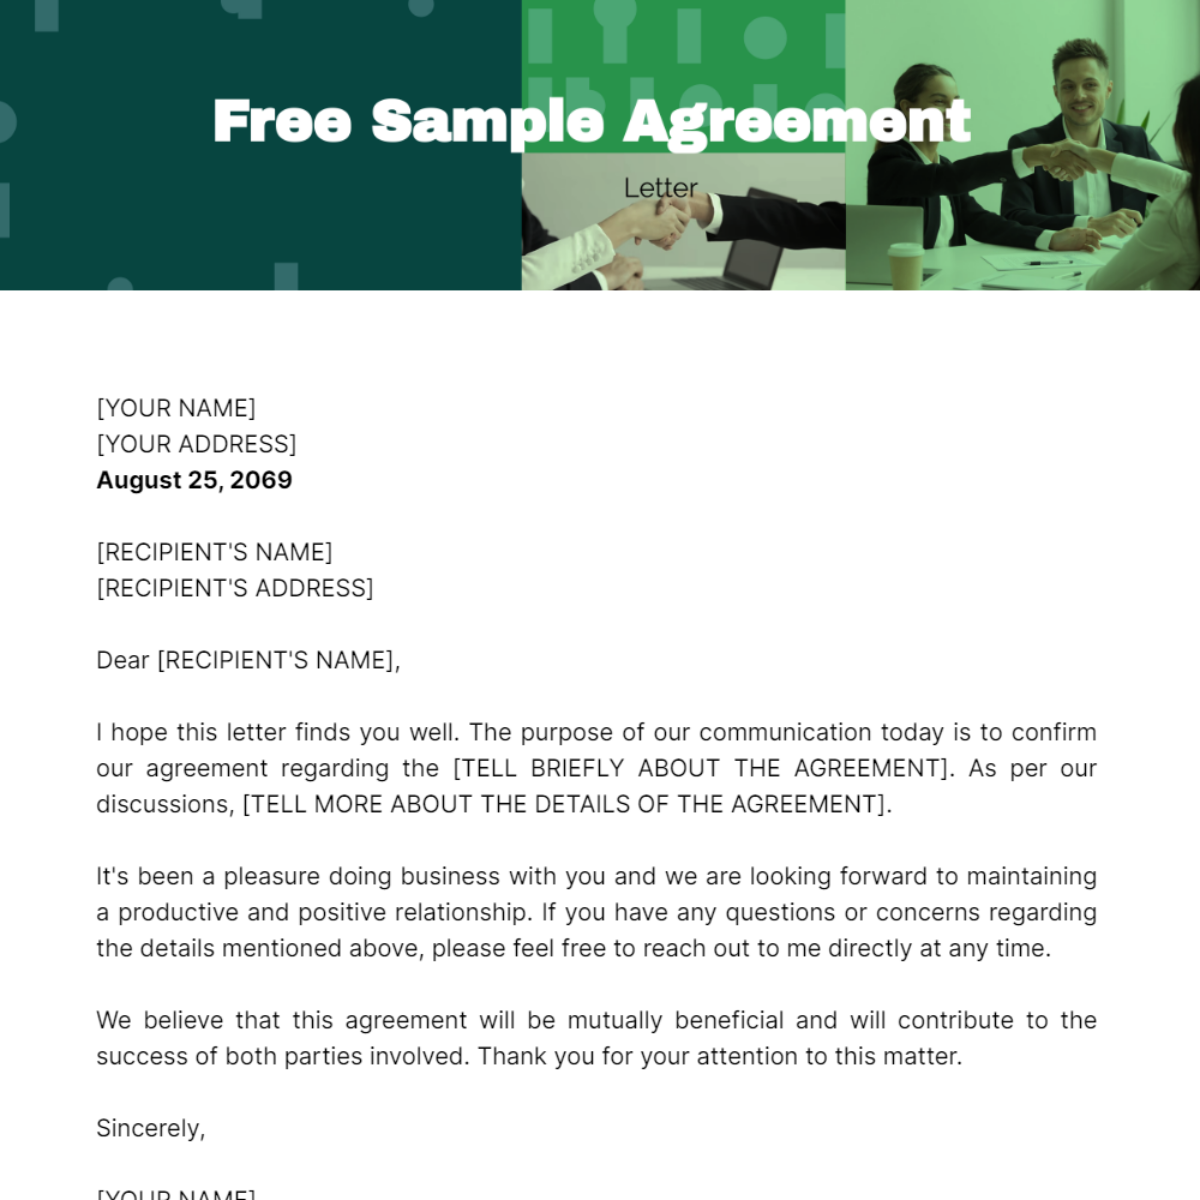 Sample Agreement Letter Template